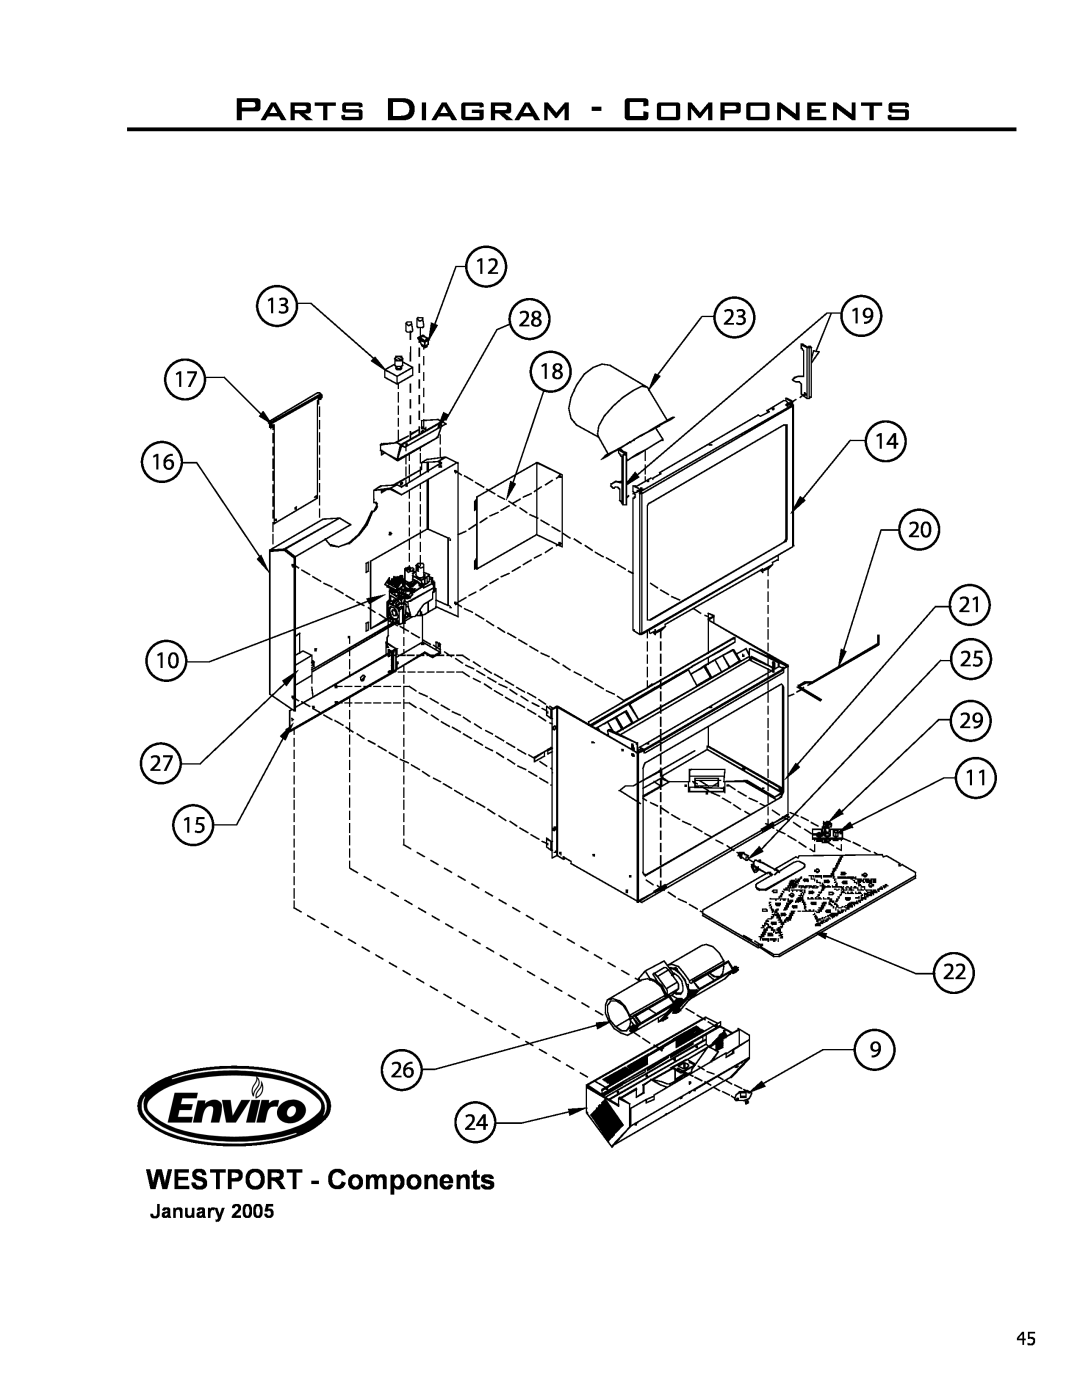 Enviro C-11290, C-10381 owner manual Parts Diagram - Components, WESTPORT - Components 